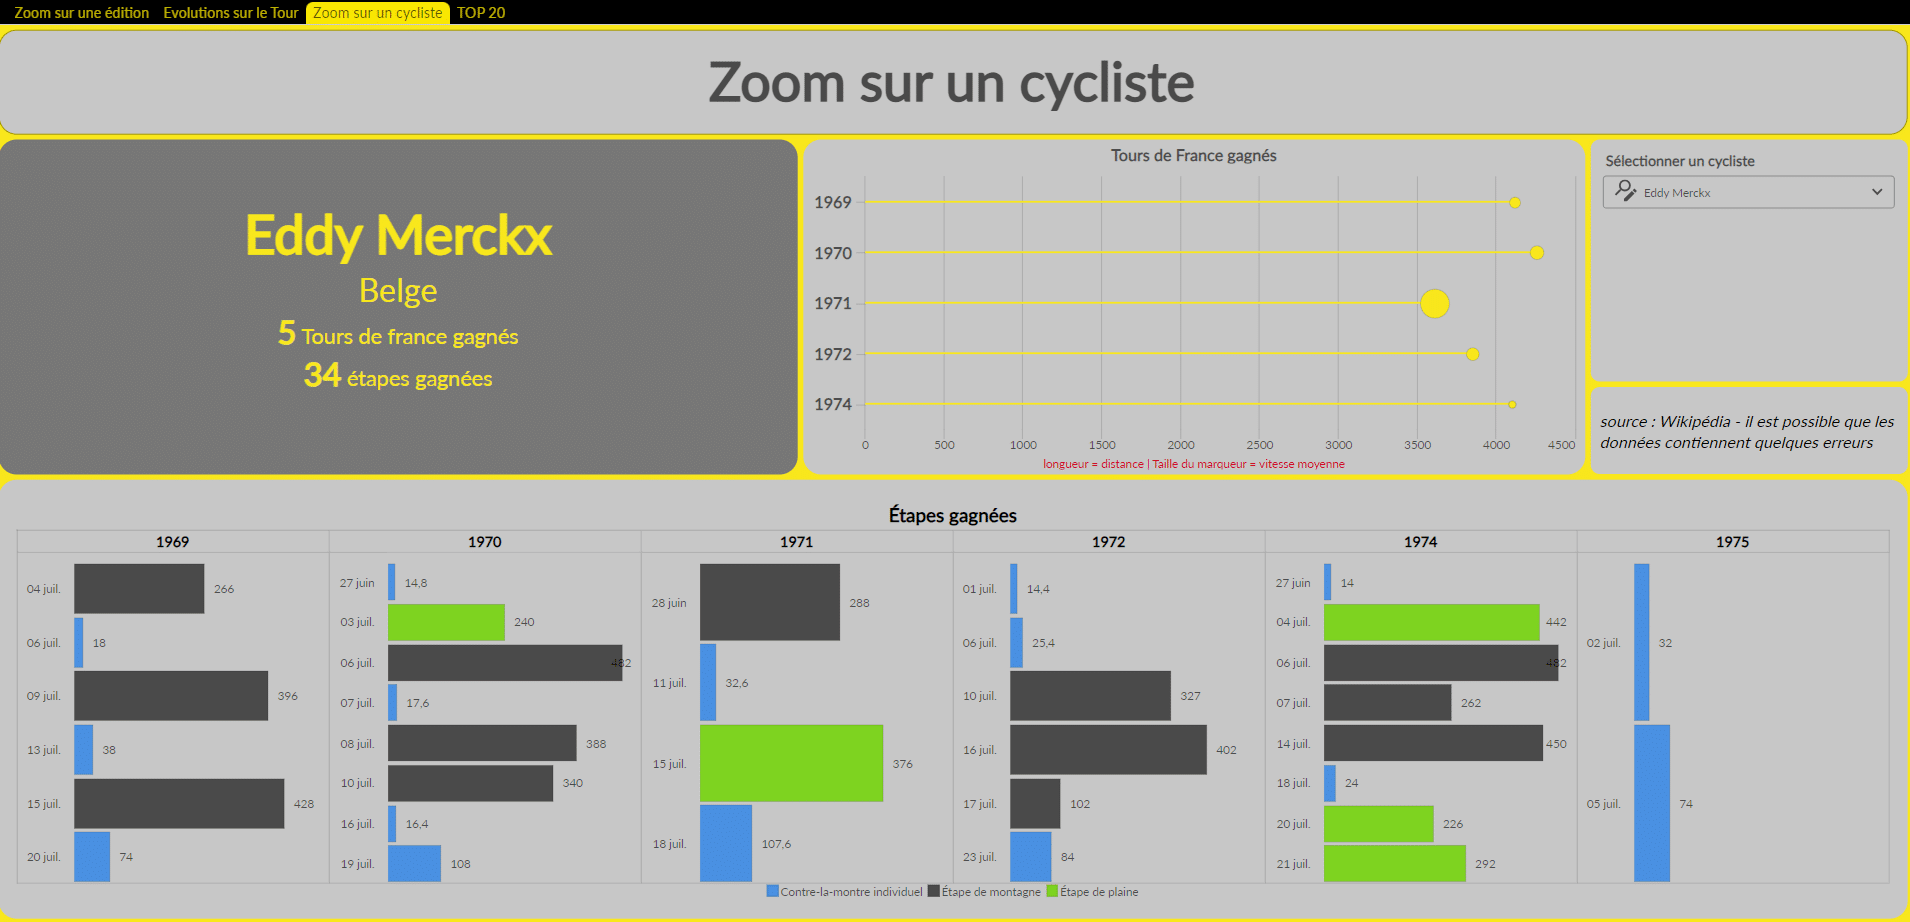 Tour de France : zoom sur un cycliste